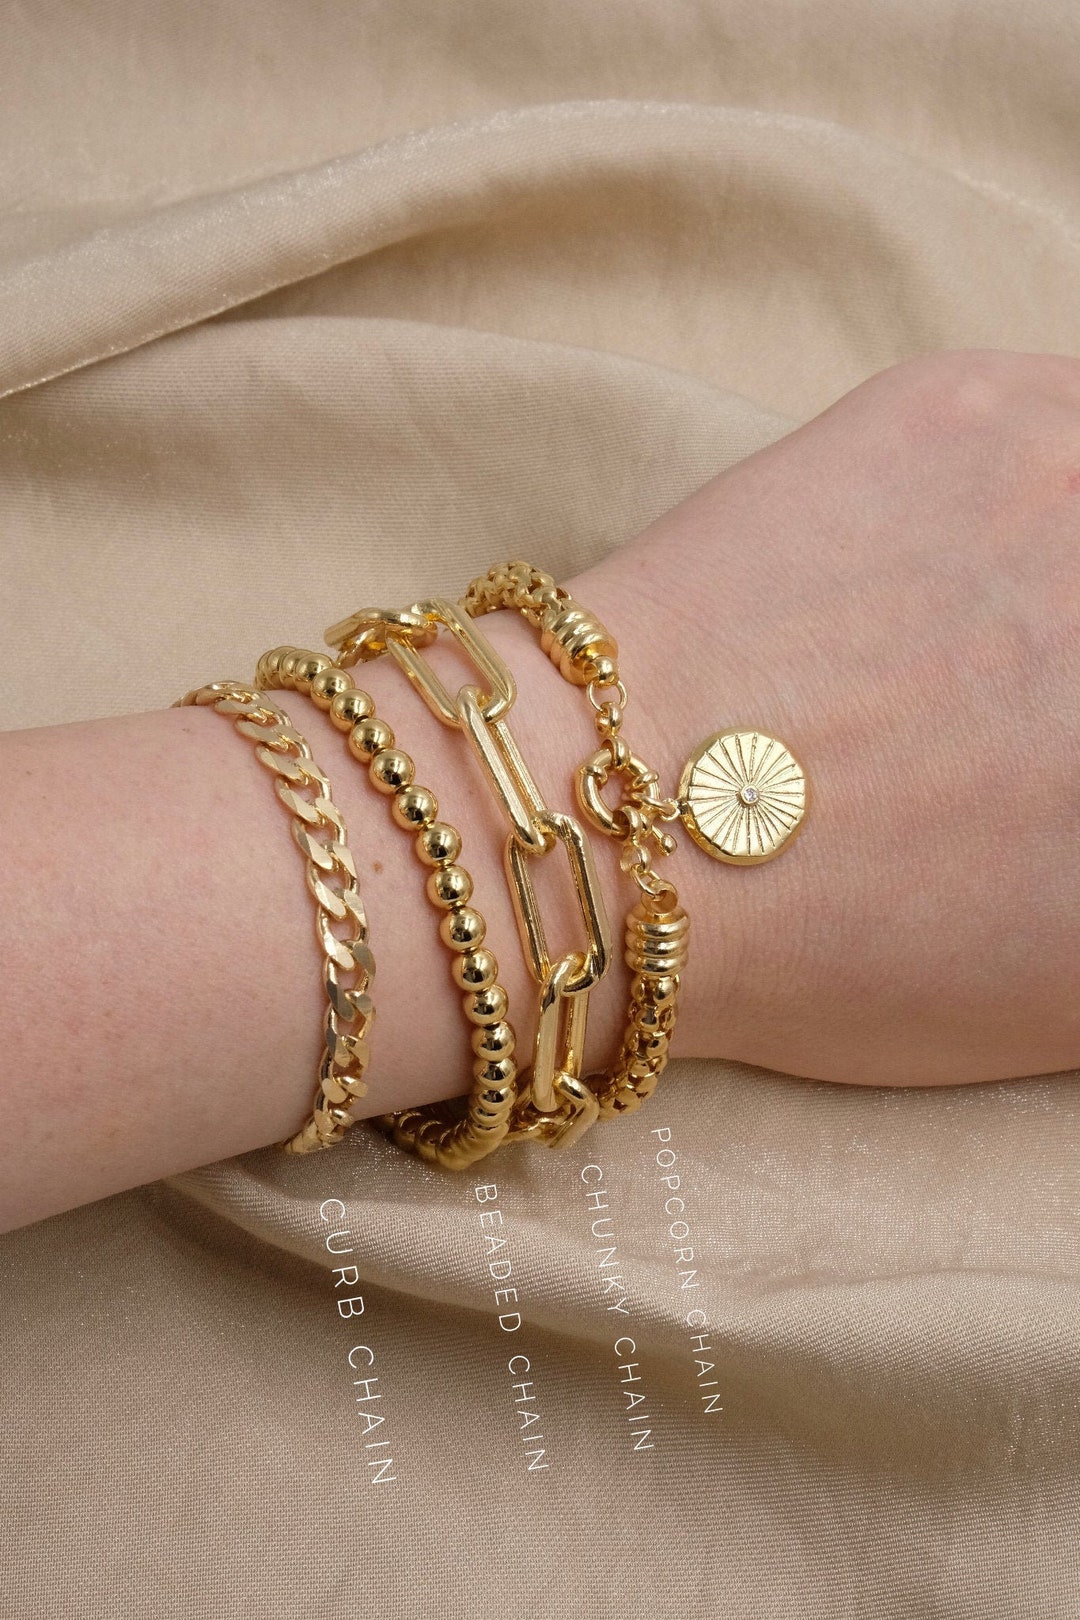 Timeless Chunky Chain Bracelet – Charlotte Bonde Sthlm